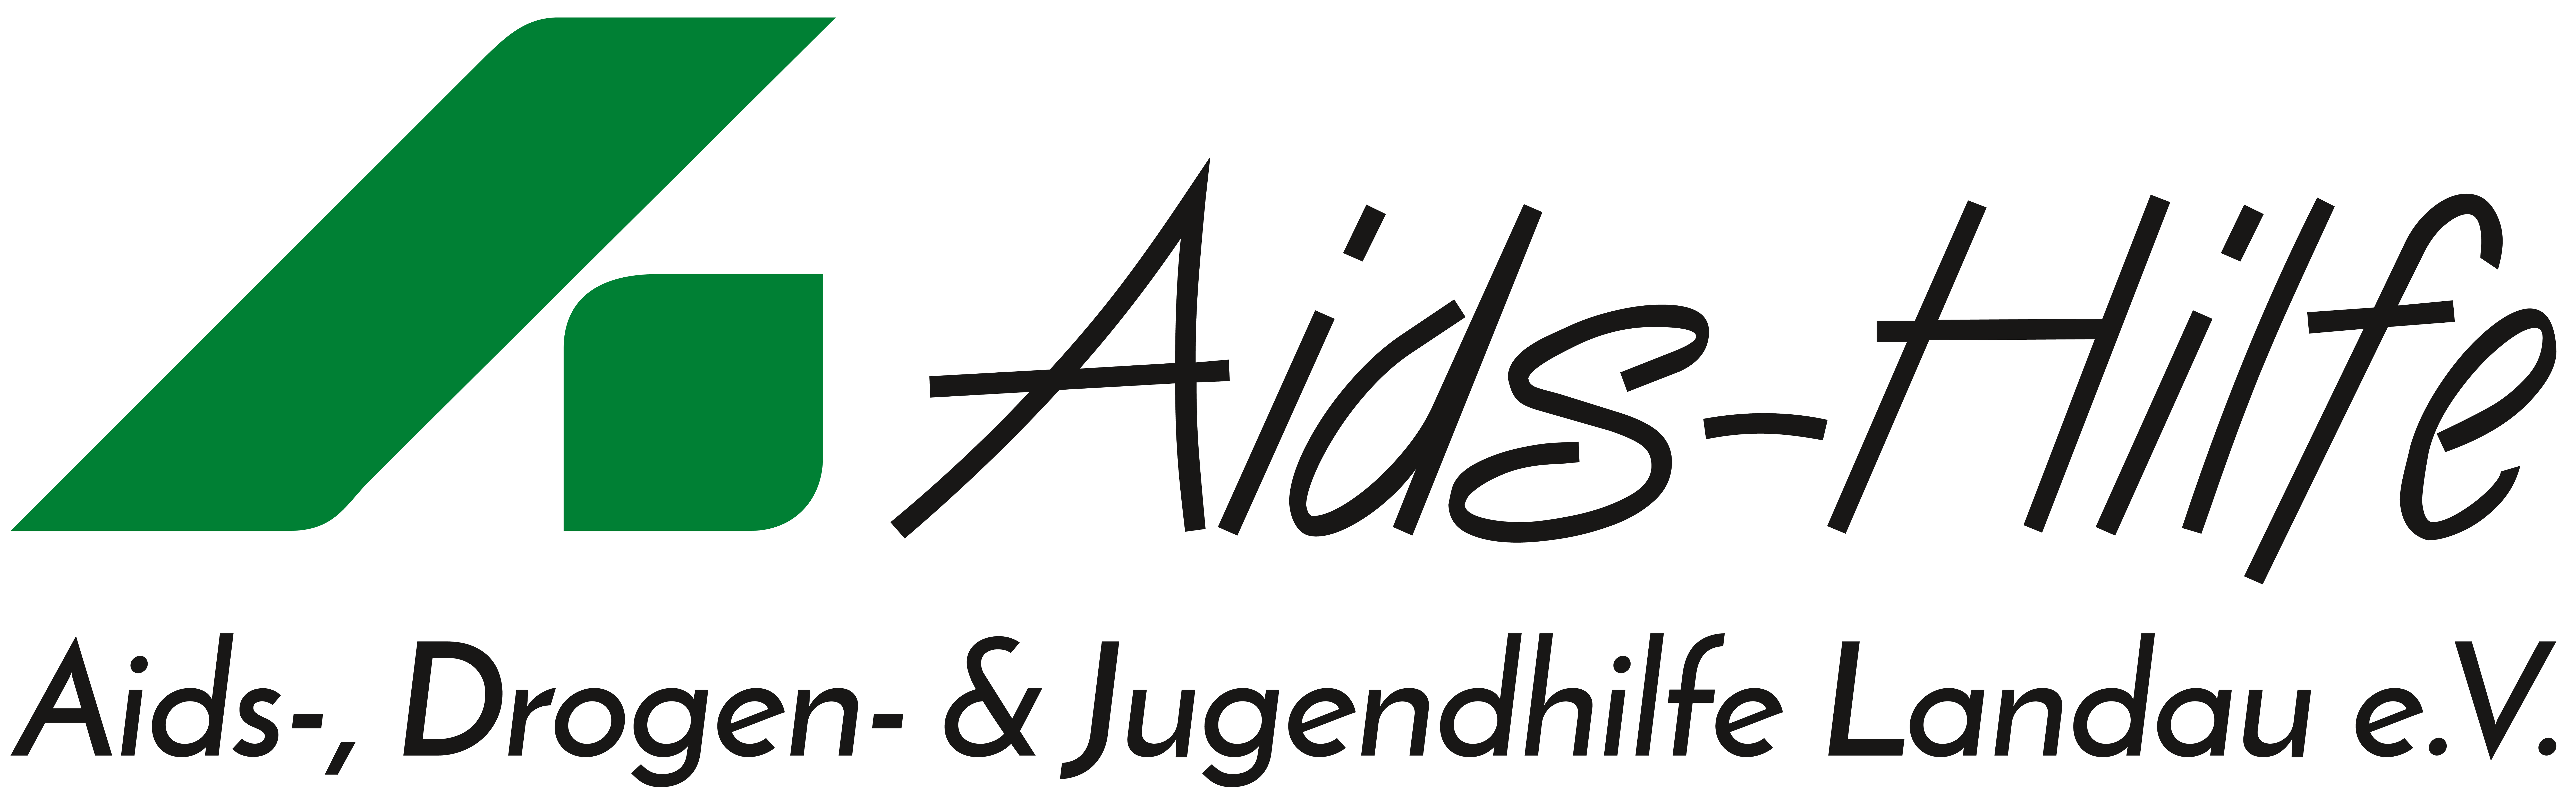 Aids-, Drogen- und Jugendhilfe Landau e.V.